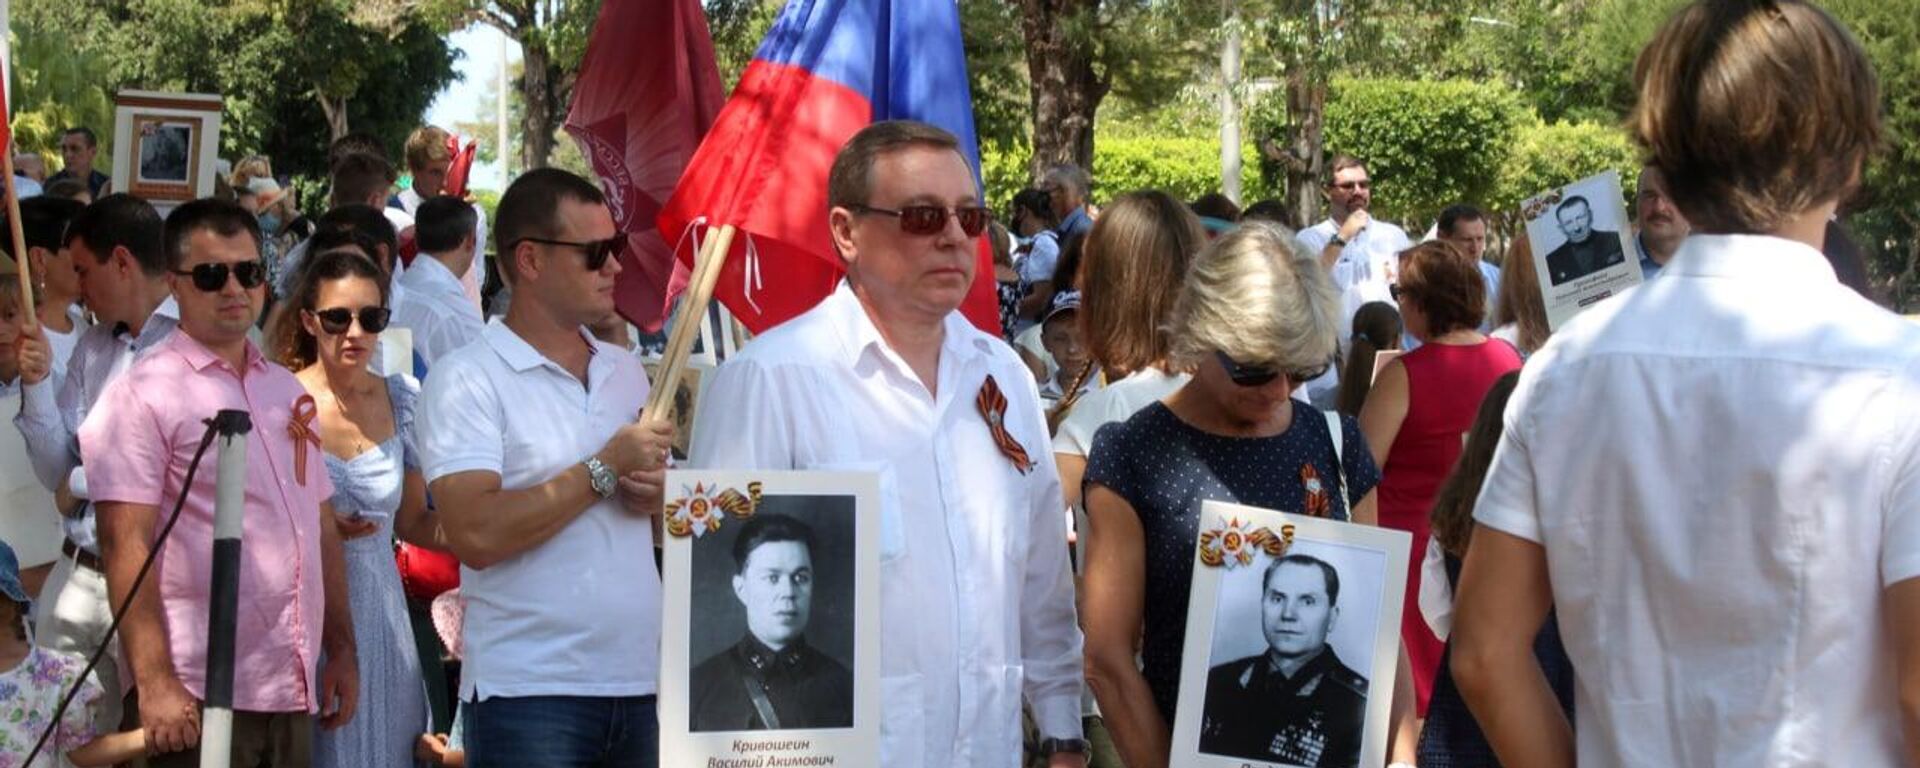 El embajador de Rusia en Cuba, Andrei Guskov (centro) con la foto de su abuelo en el desfile del Regimiento Inmortal desfila en La Habana, Cuba - Sputnik Mundo, 1920, 09.05.2022